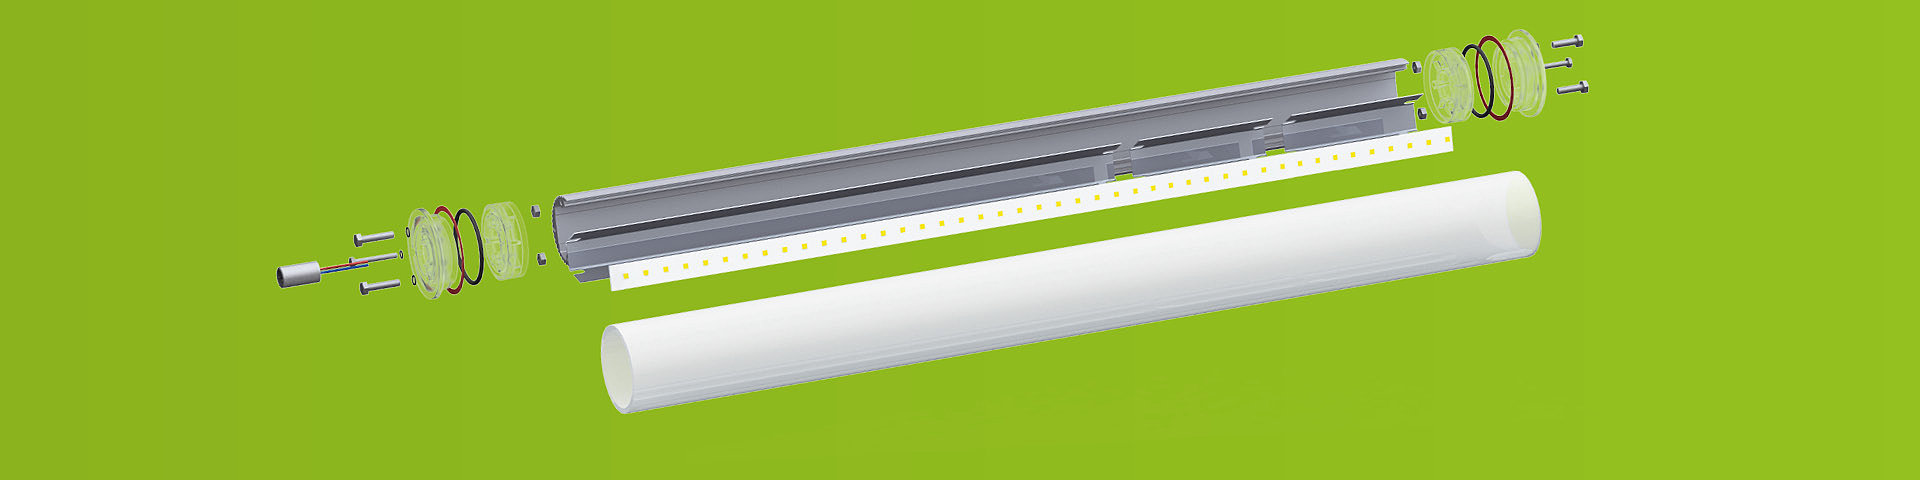 Luminaire industriel à LED avec tube de protection en vue éclatée